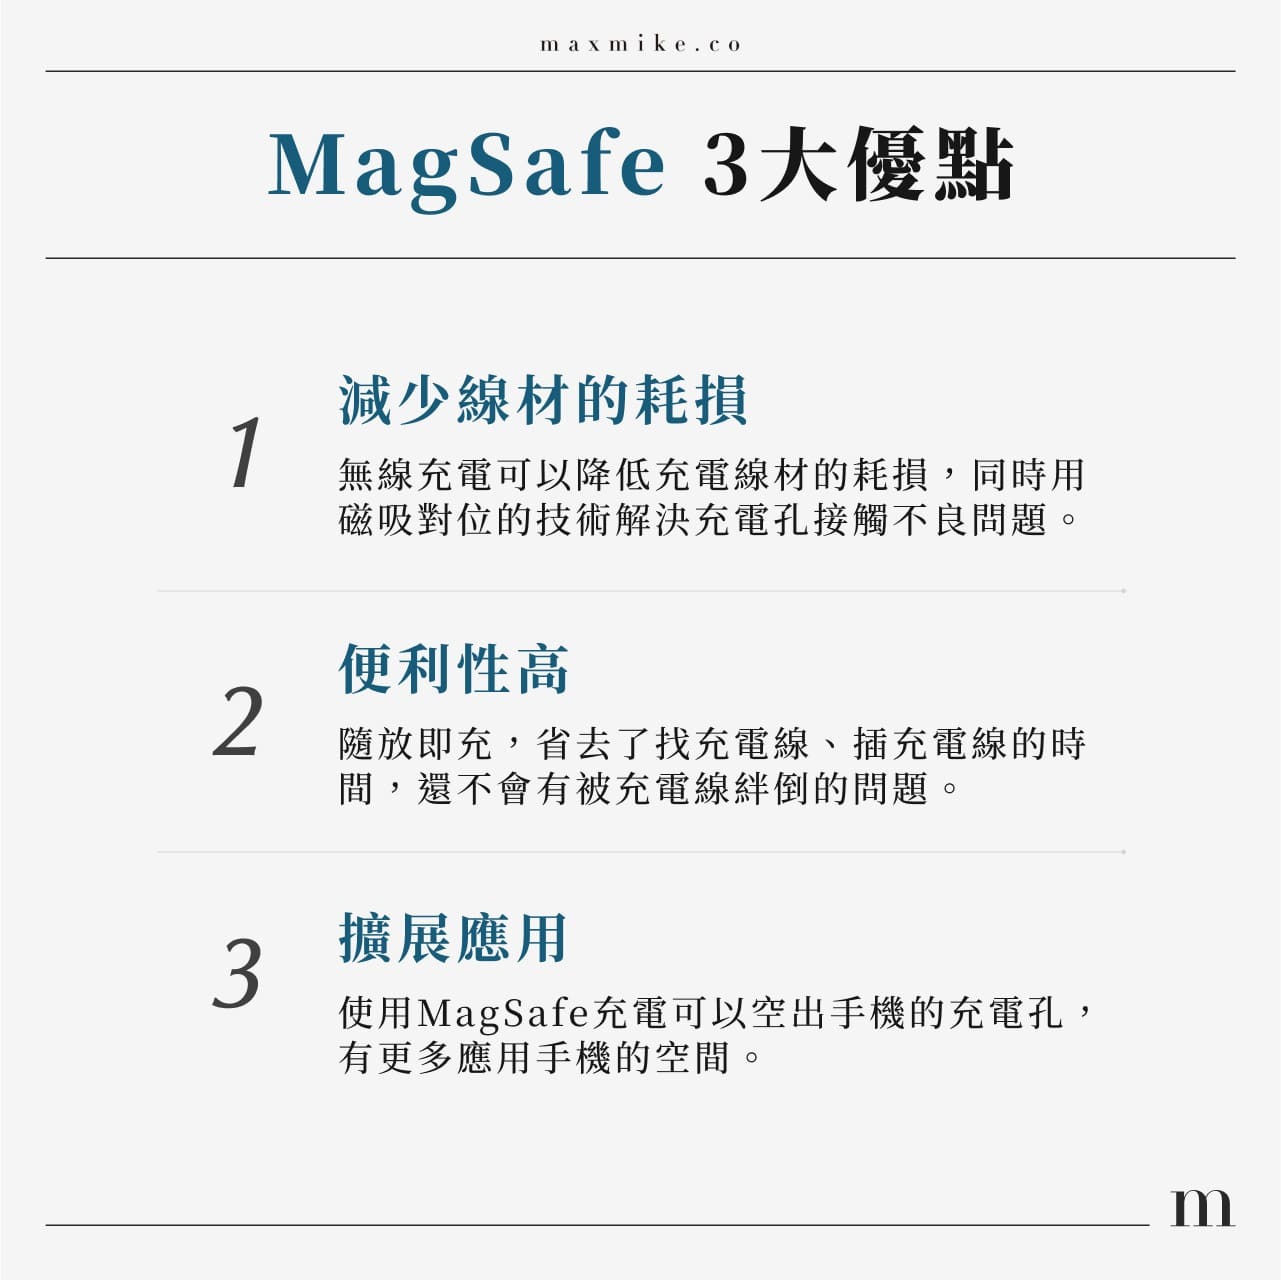 MagSafe3大優點
